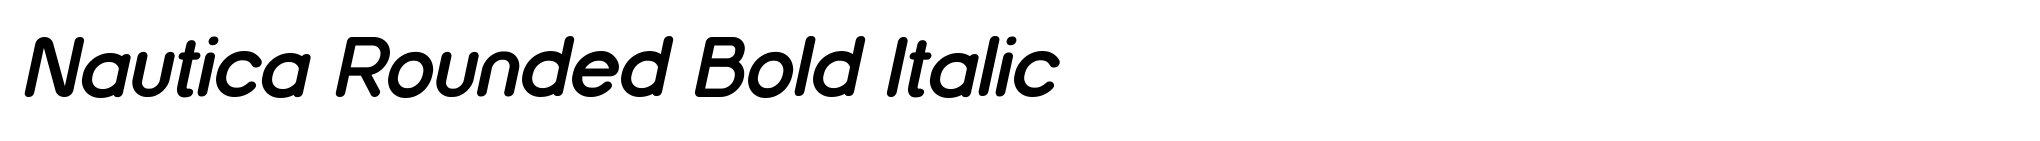 Nautica Rounded Bold Italic image